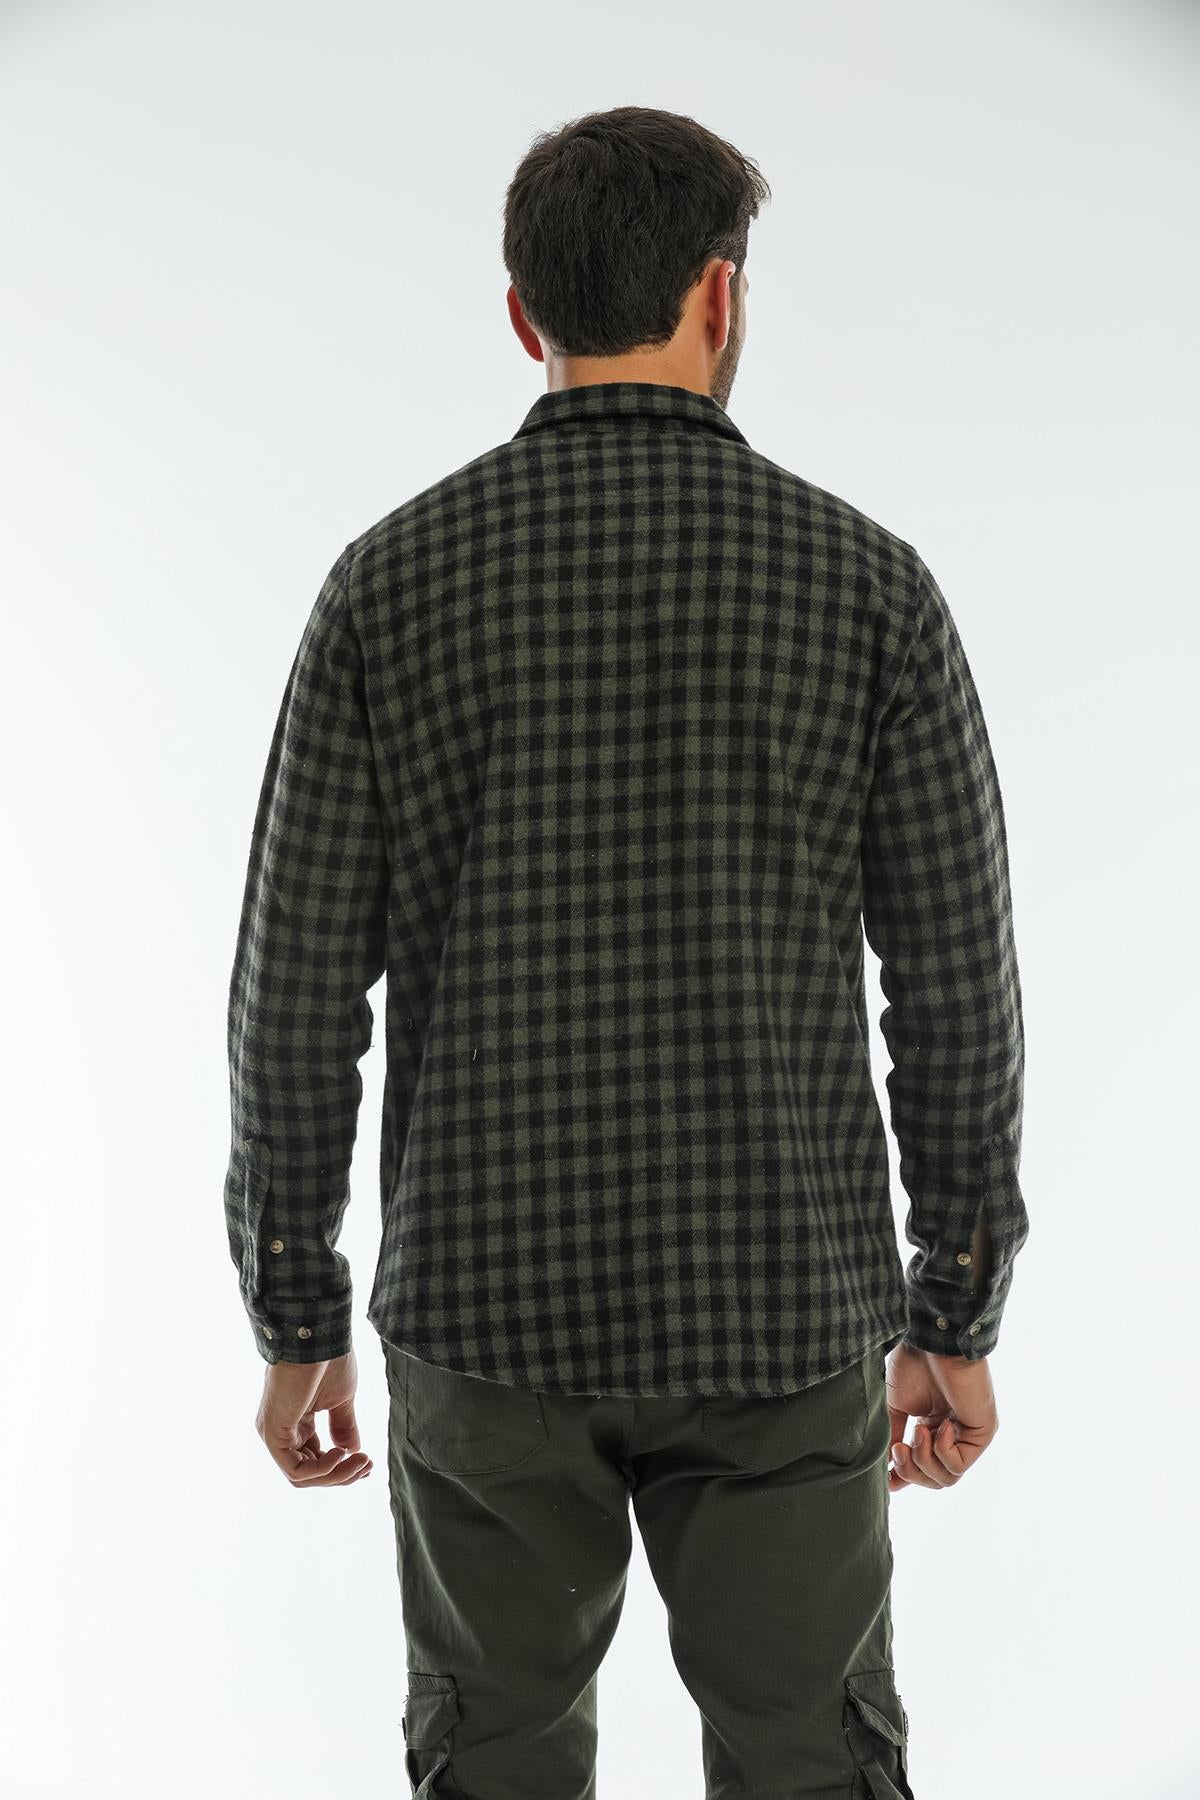 Çift Cep Kapaklı Oversize Kareli Kalın Ekose Oduncu Erkek Gömlek Ceket Shacket